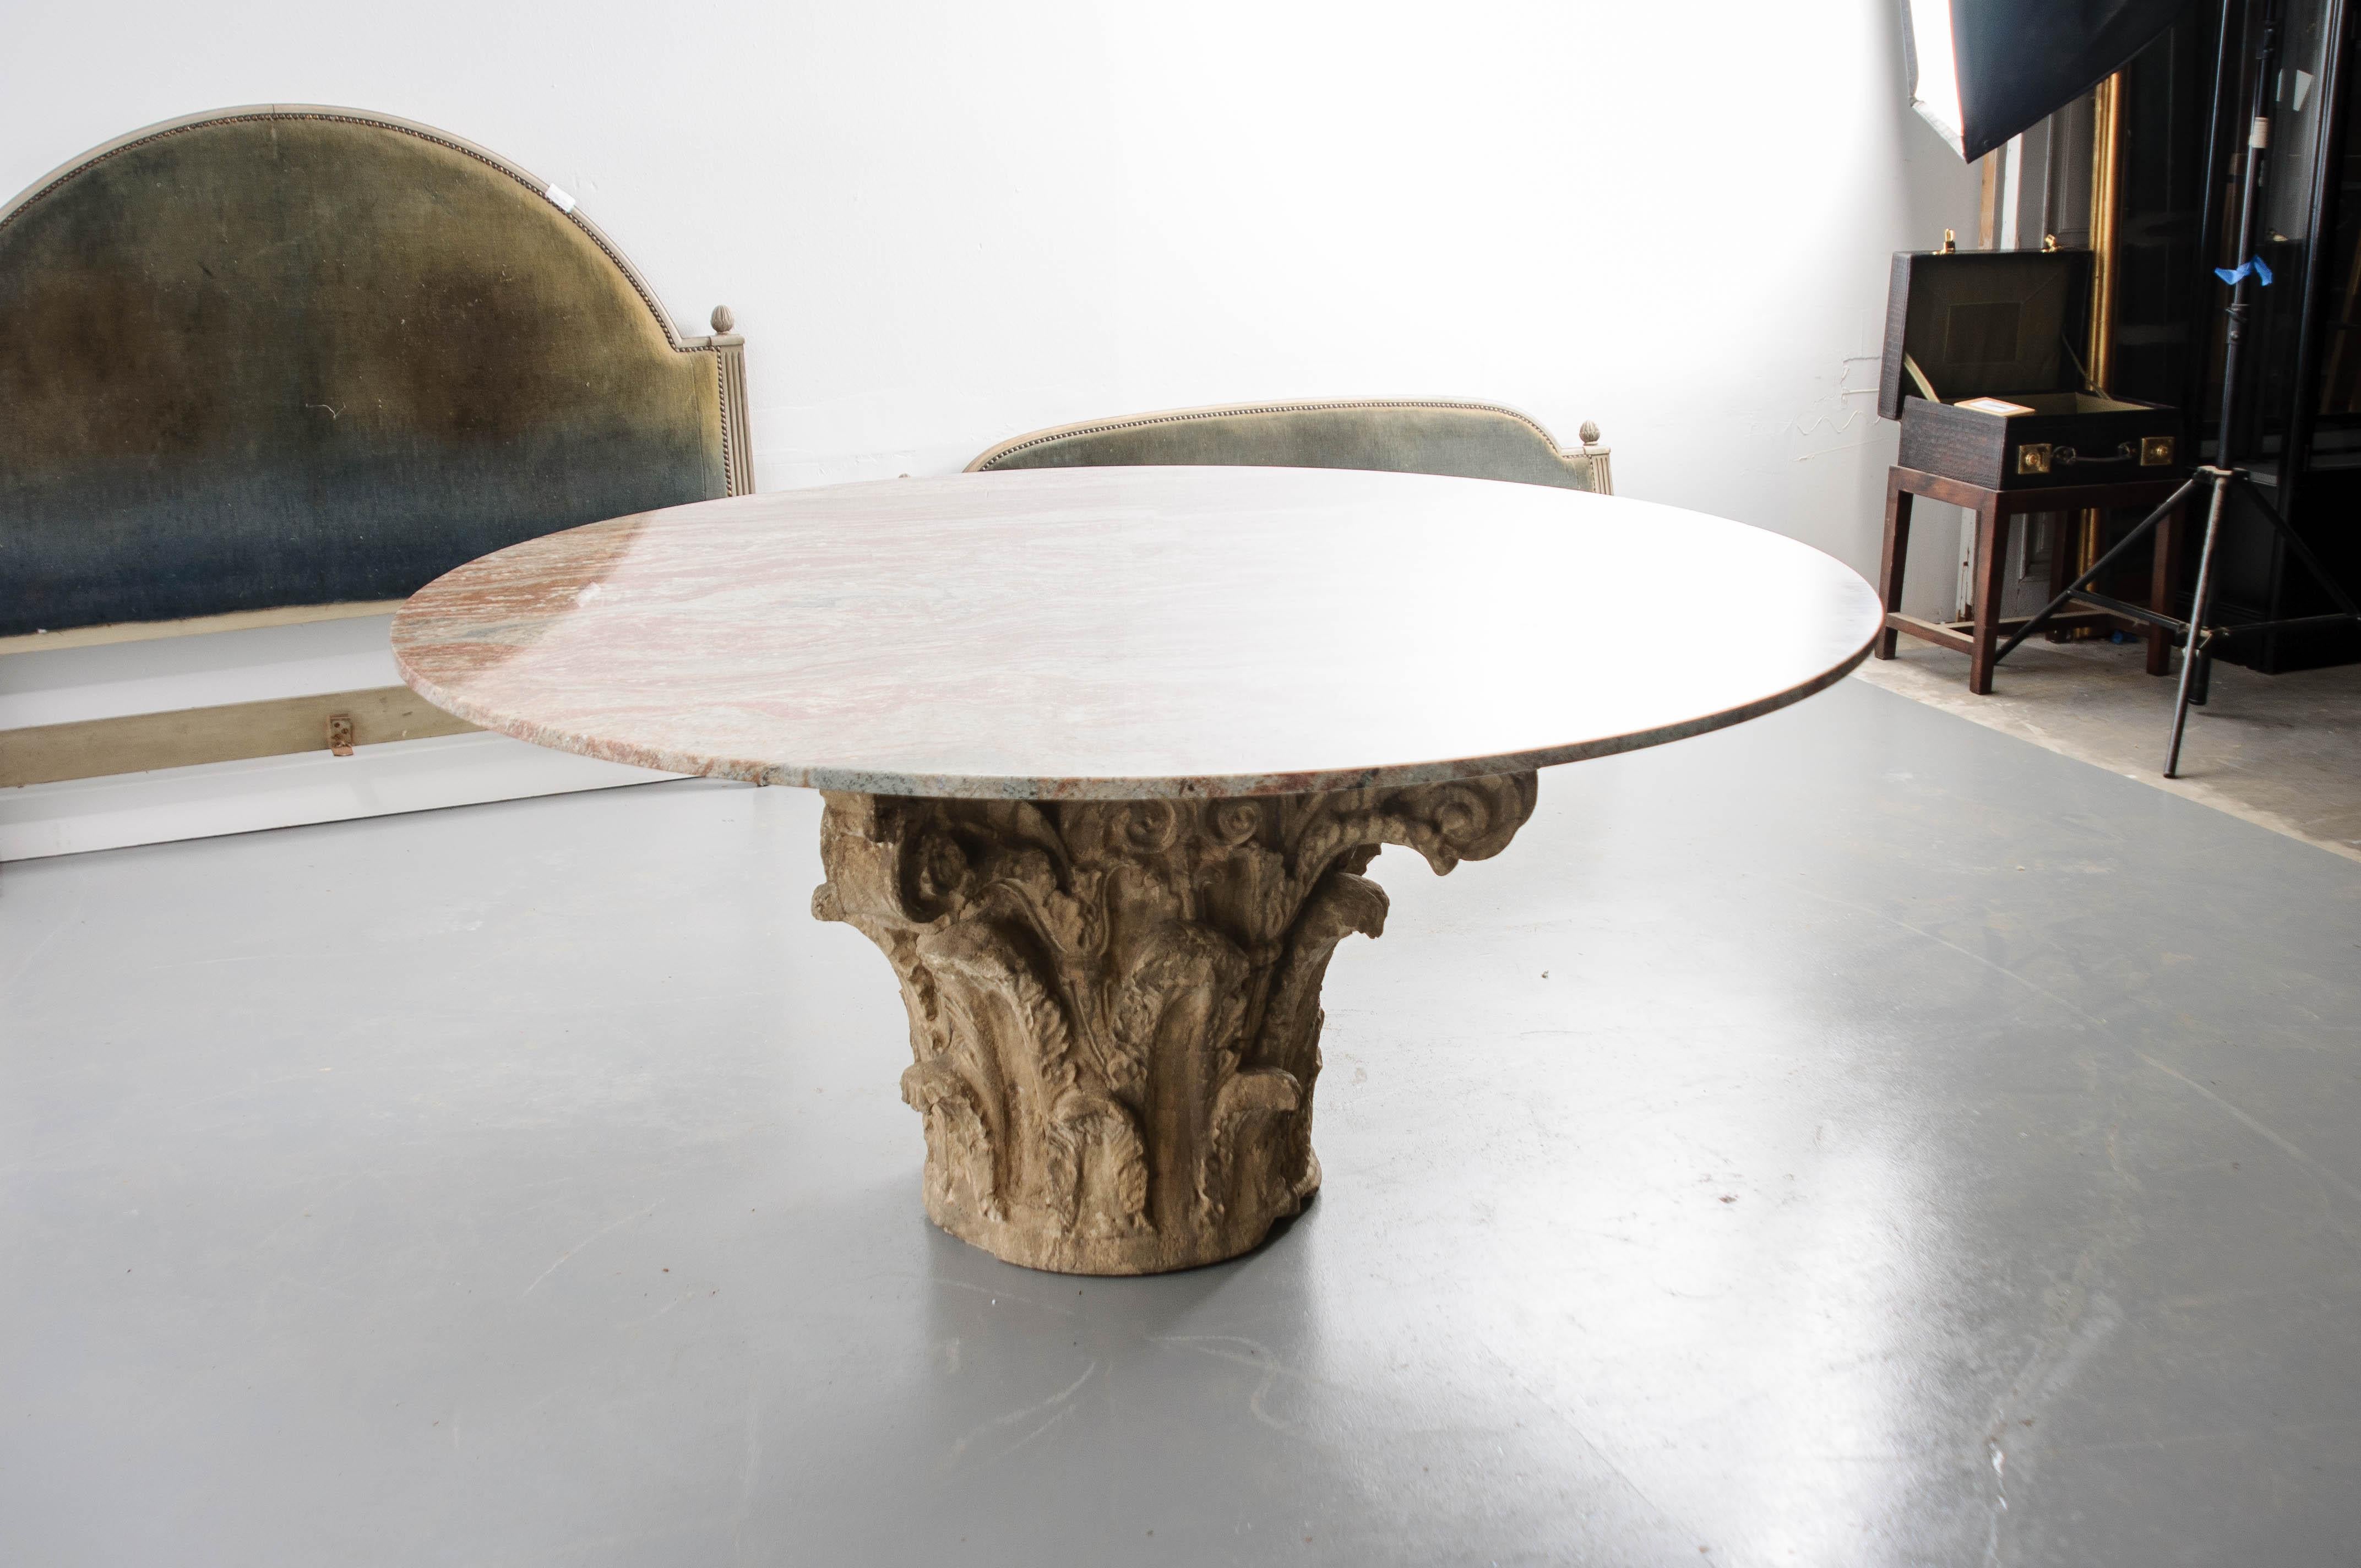 Ein wunderschöner französischer Betonsockel aus dem 19. Jahrhundert. Die Patina ist fantastisch und die Oberfläche weist viele Details auf. Die neue, runde Marmorplatte sorgt für einen pflegeleichten Tisch.

      